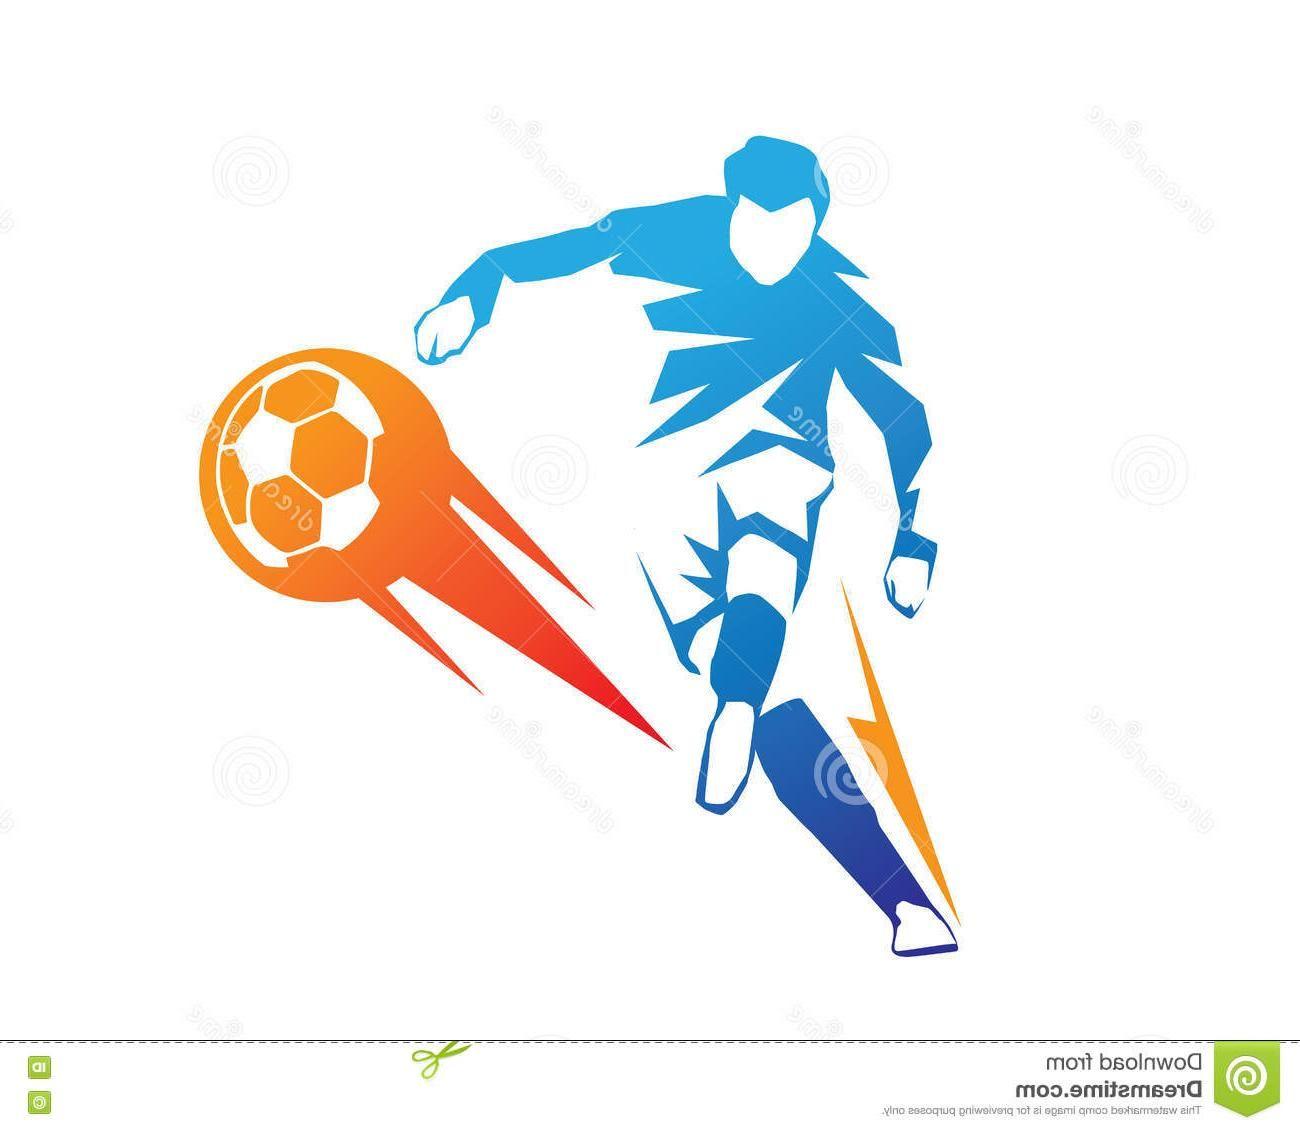 Football Player Logo - Best 15 Football Player Action Logo Ball Fire Penalty Kick Blue